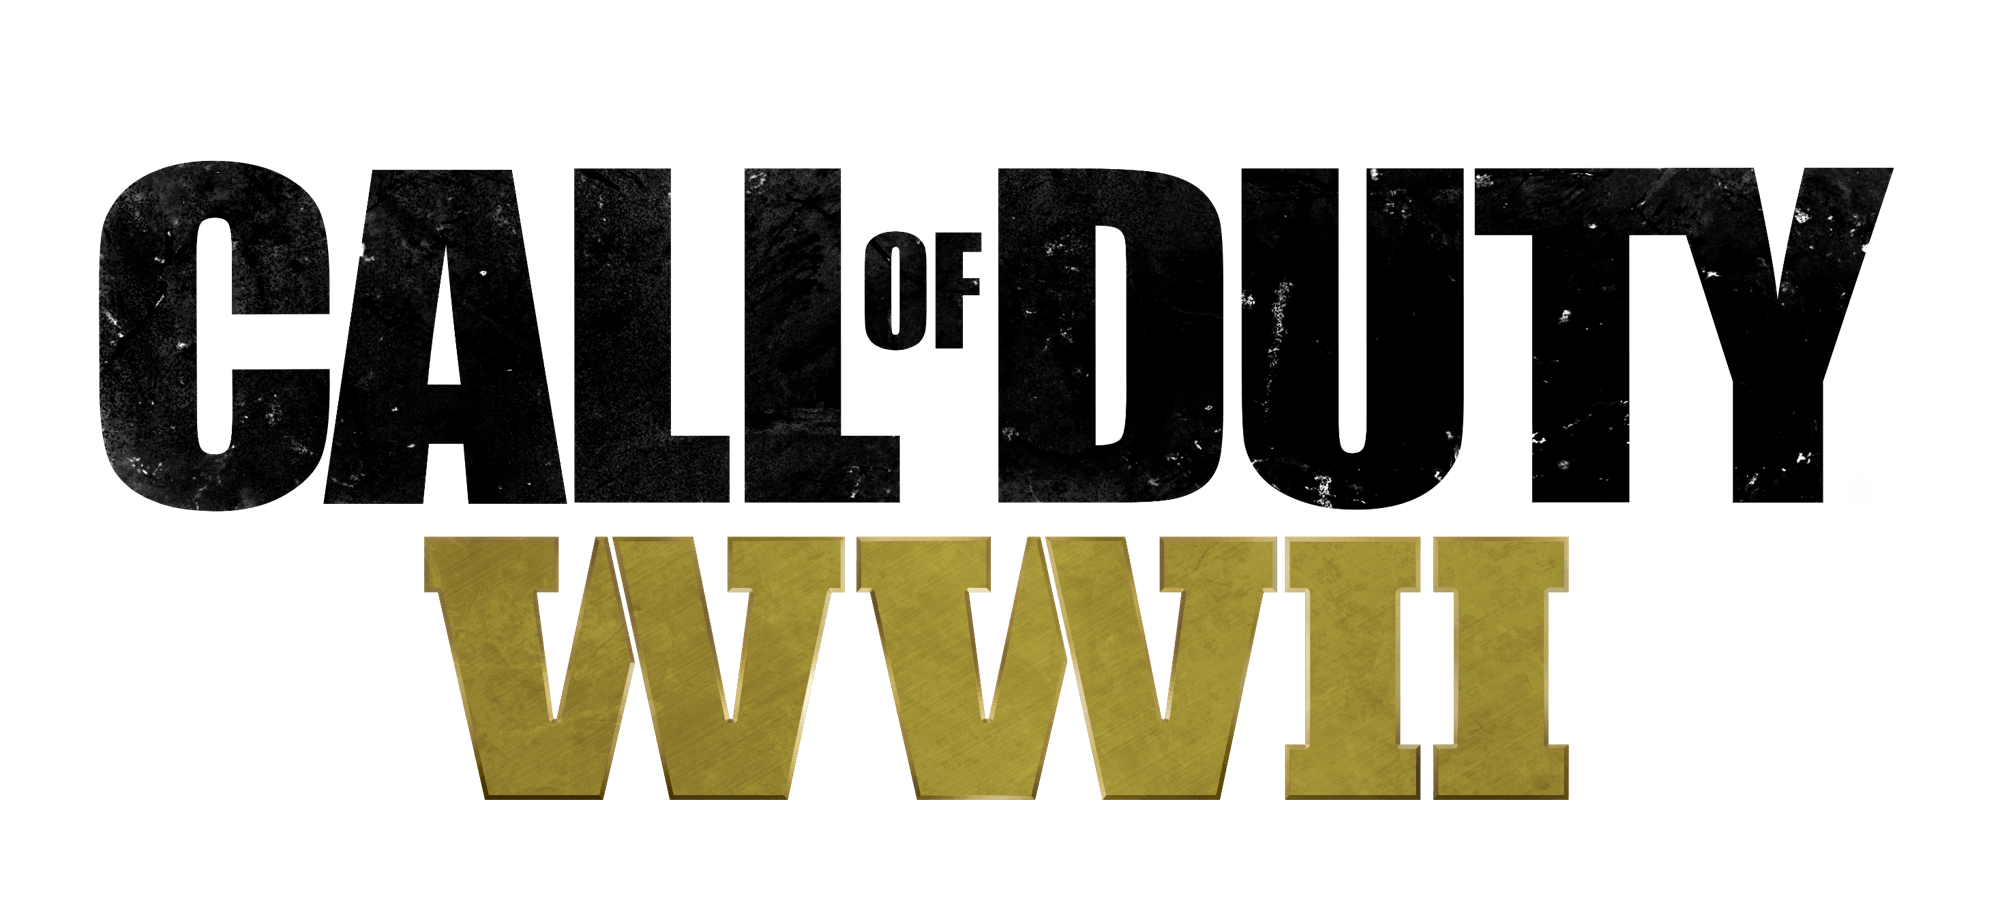 WW2 Logo - Call of Duty: WWII | Logopedia | FANDOM powered by Wikia